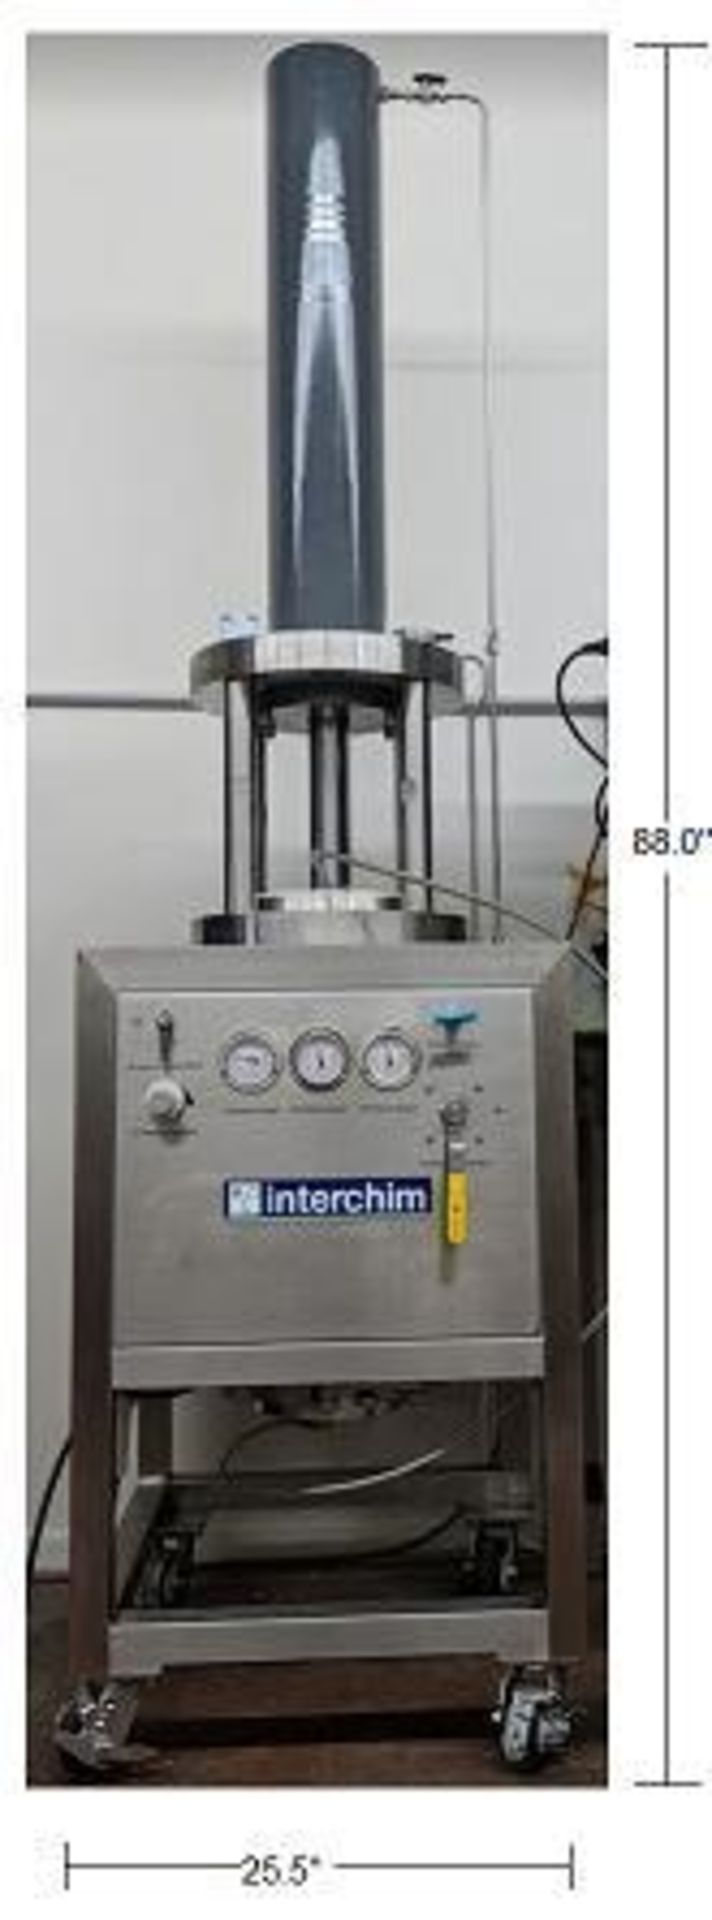 NEW Interchim ITM800.G5 Chromatography System.